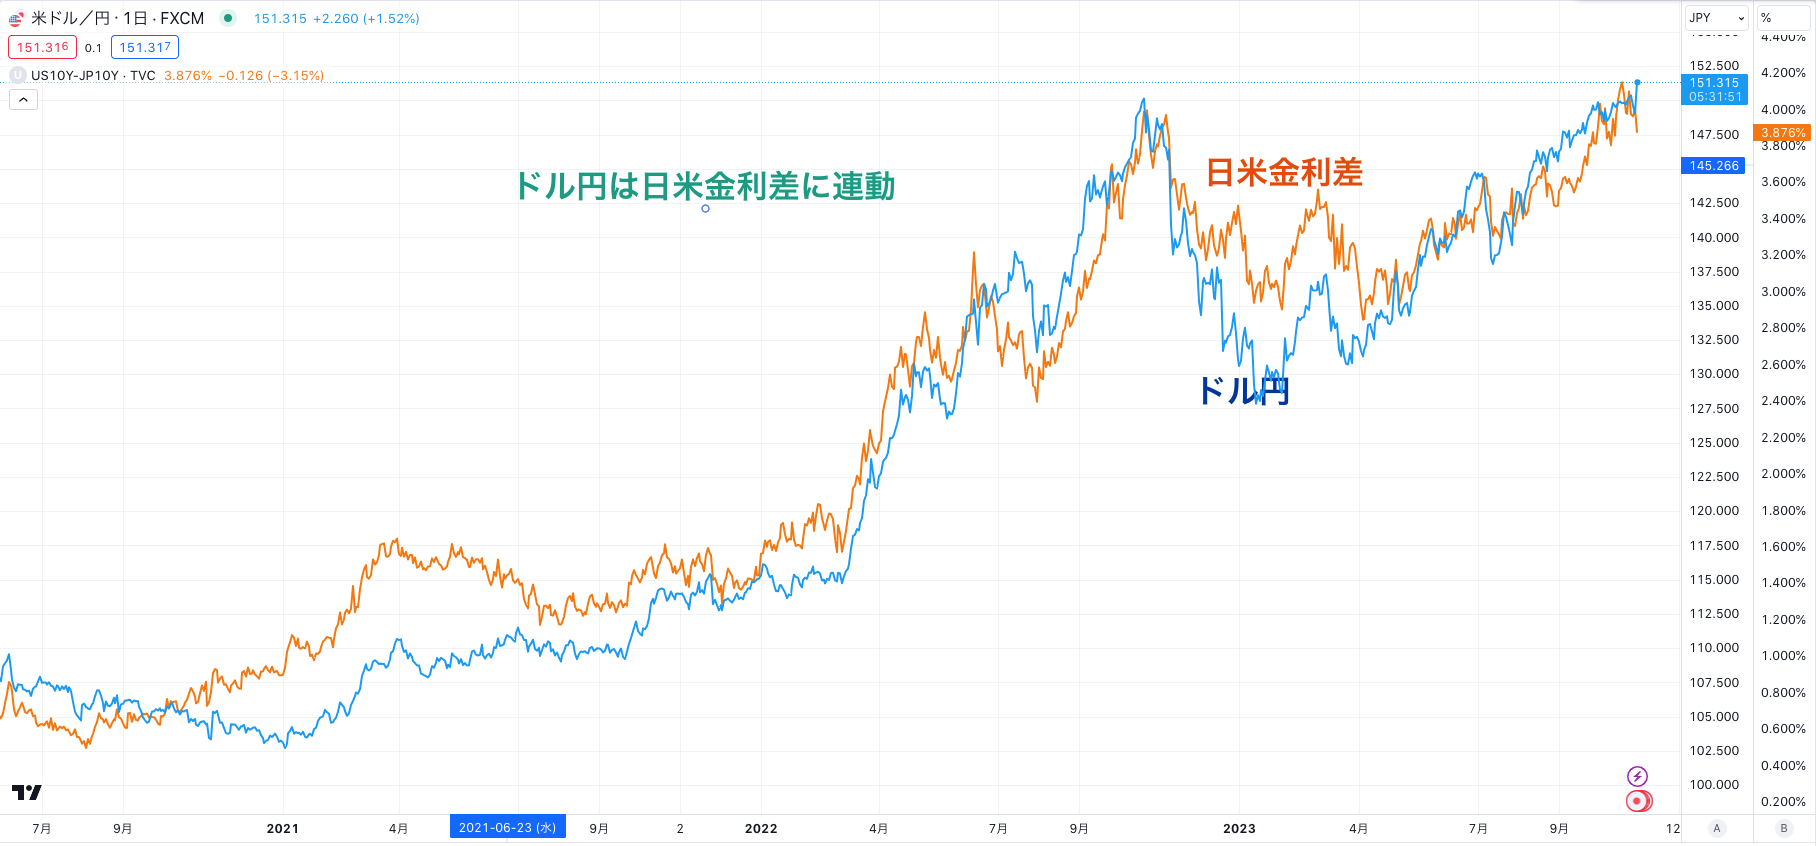 ドル円は日米金利差と連動